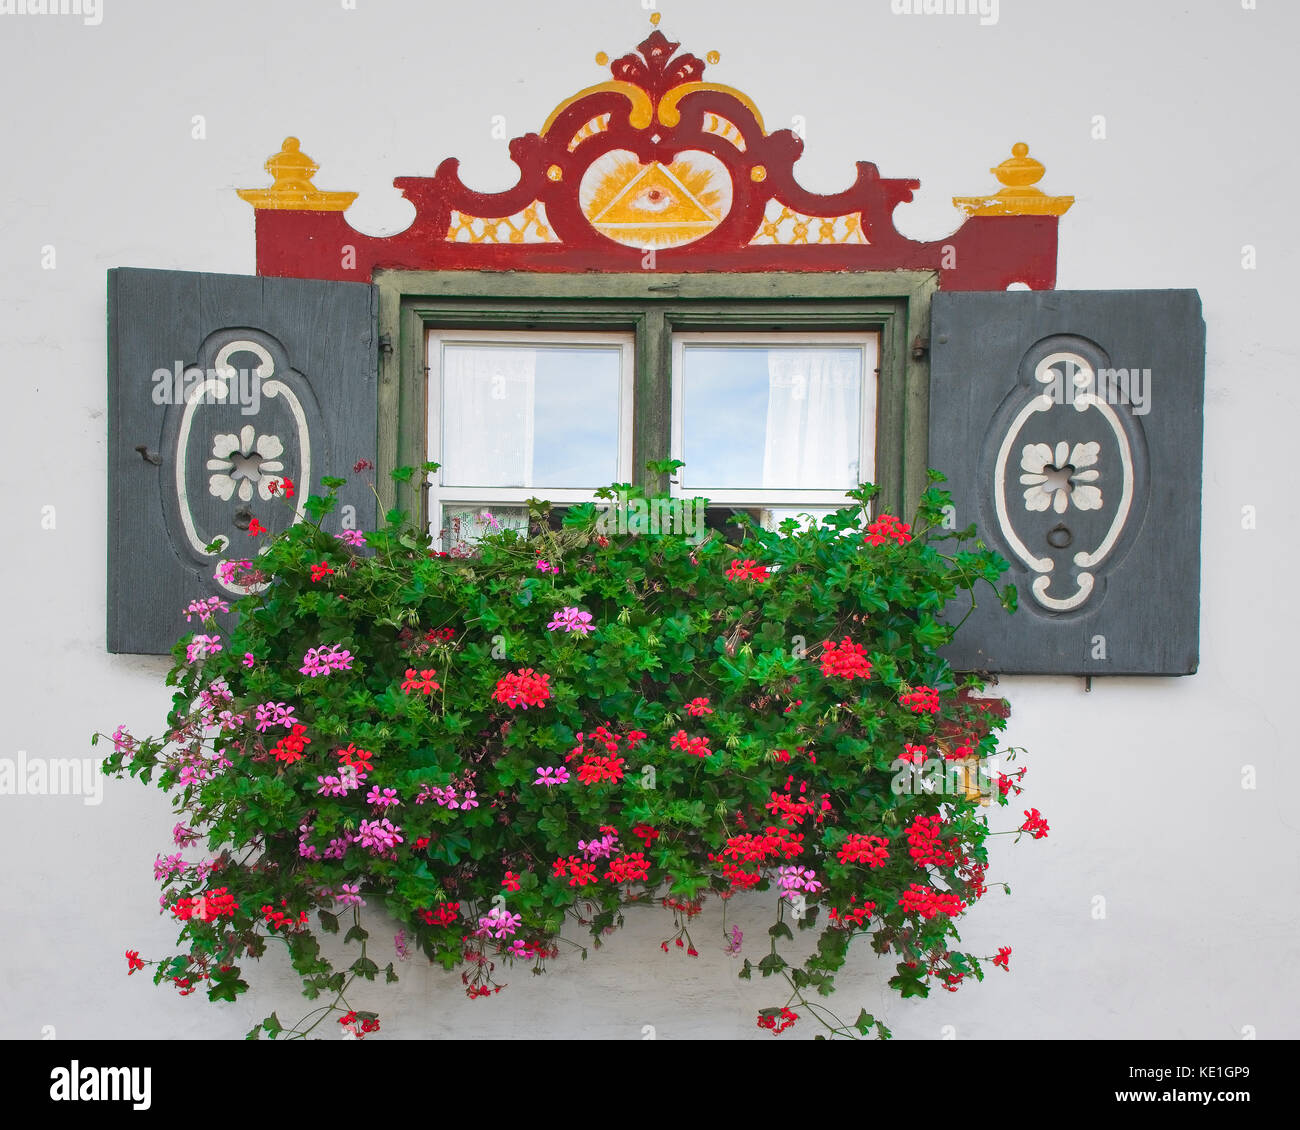 De - Bayern: traditionelle bayerische Fenster aufzurufen Stockfotografie -  Alamy